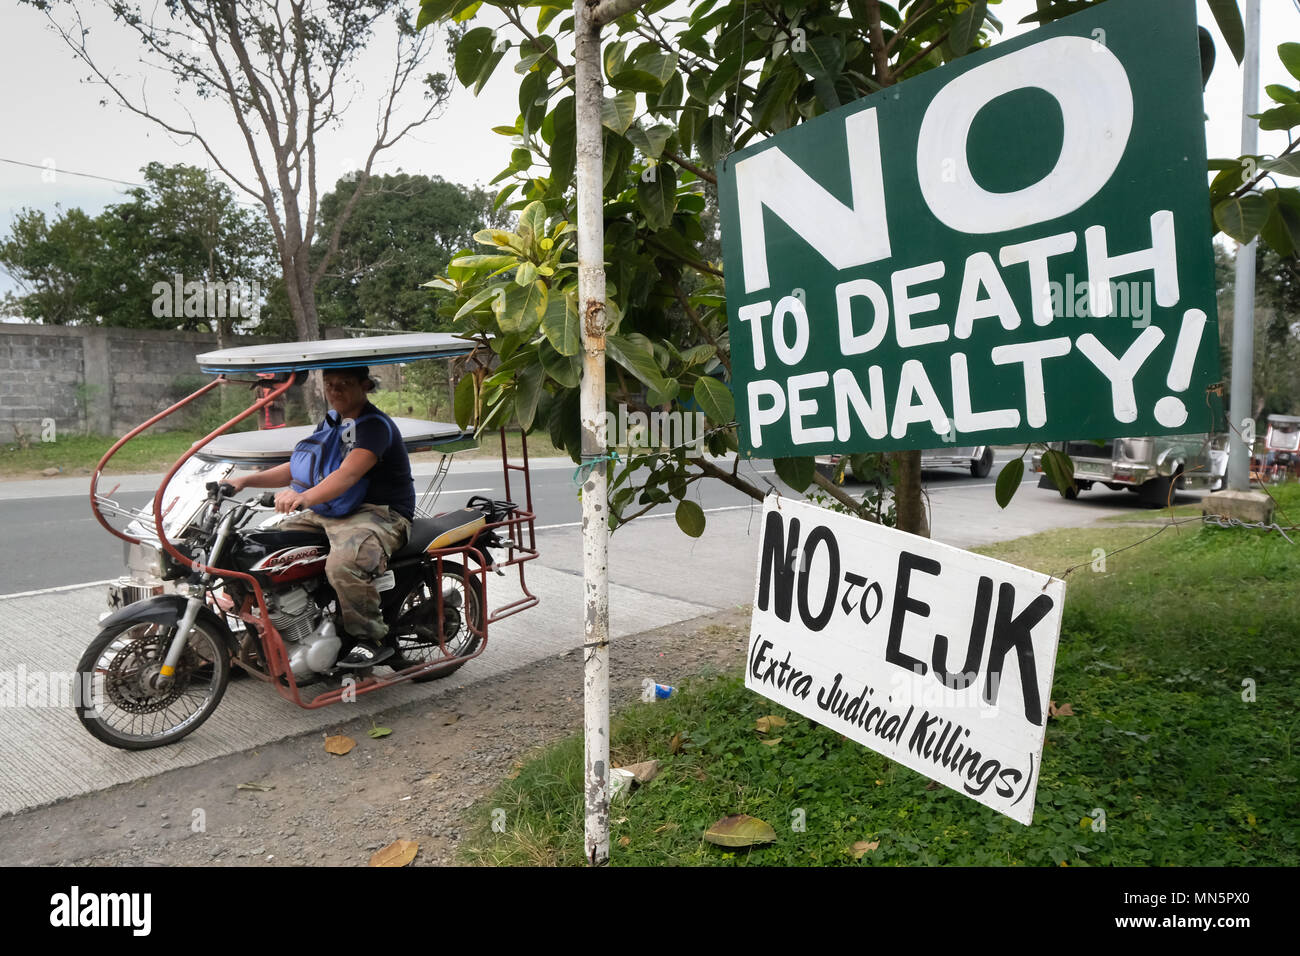 Zeichen gegen die Todesstrafe und außergerichtliche Tötungen in den Philippinen am Straßenrand von Tagaytay, Philippinen - Schilder gegen Todesstrafe und außergerichtliche Tötungen in den Philippinen am Straßenrand von Tagaytay, Philippinen Stockfoto